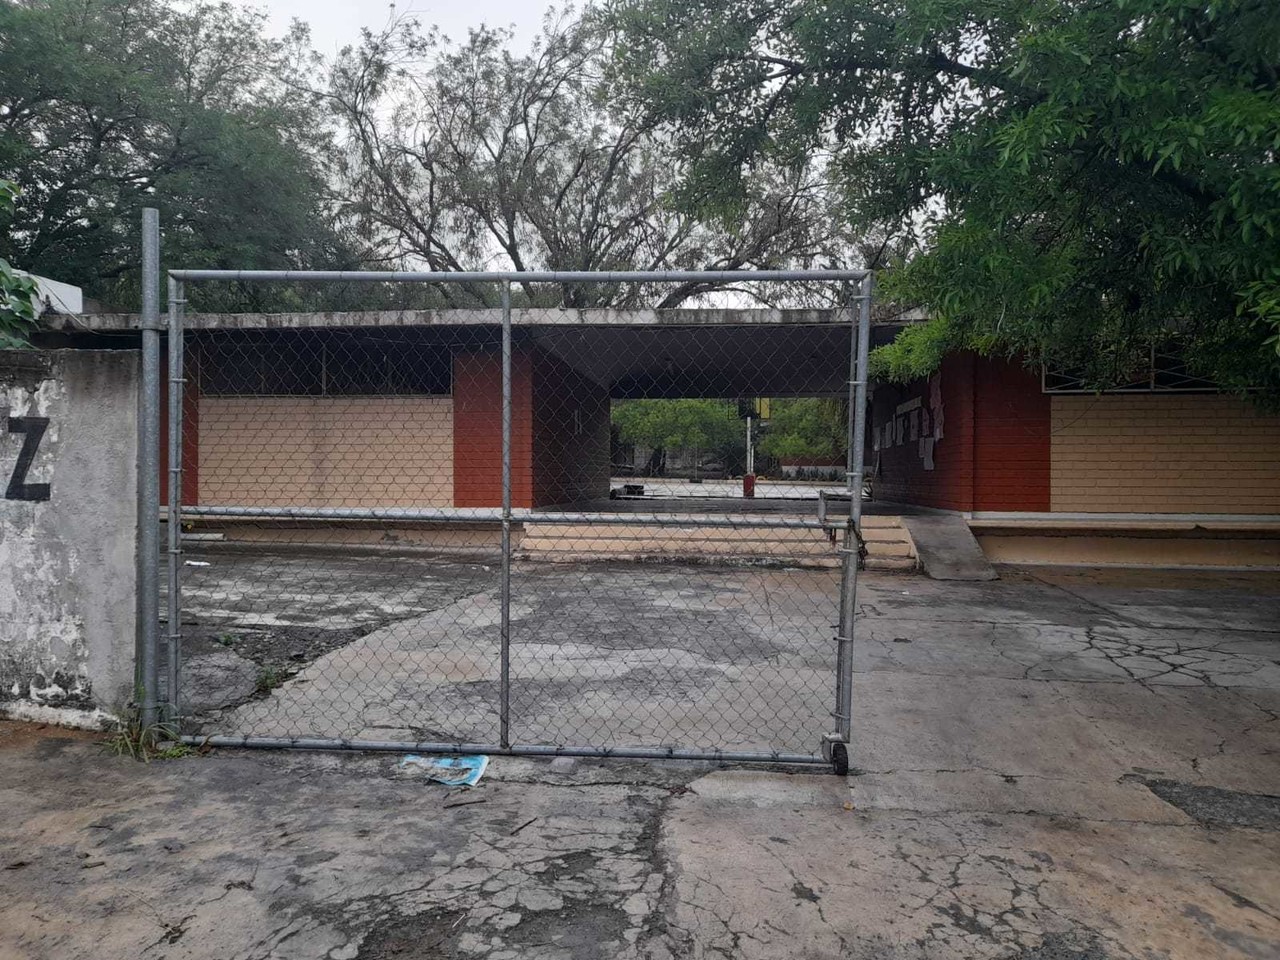 Saquean y vandalizan escuela en Guadalupe; Municipio actuará